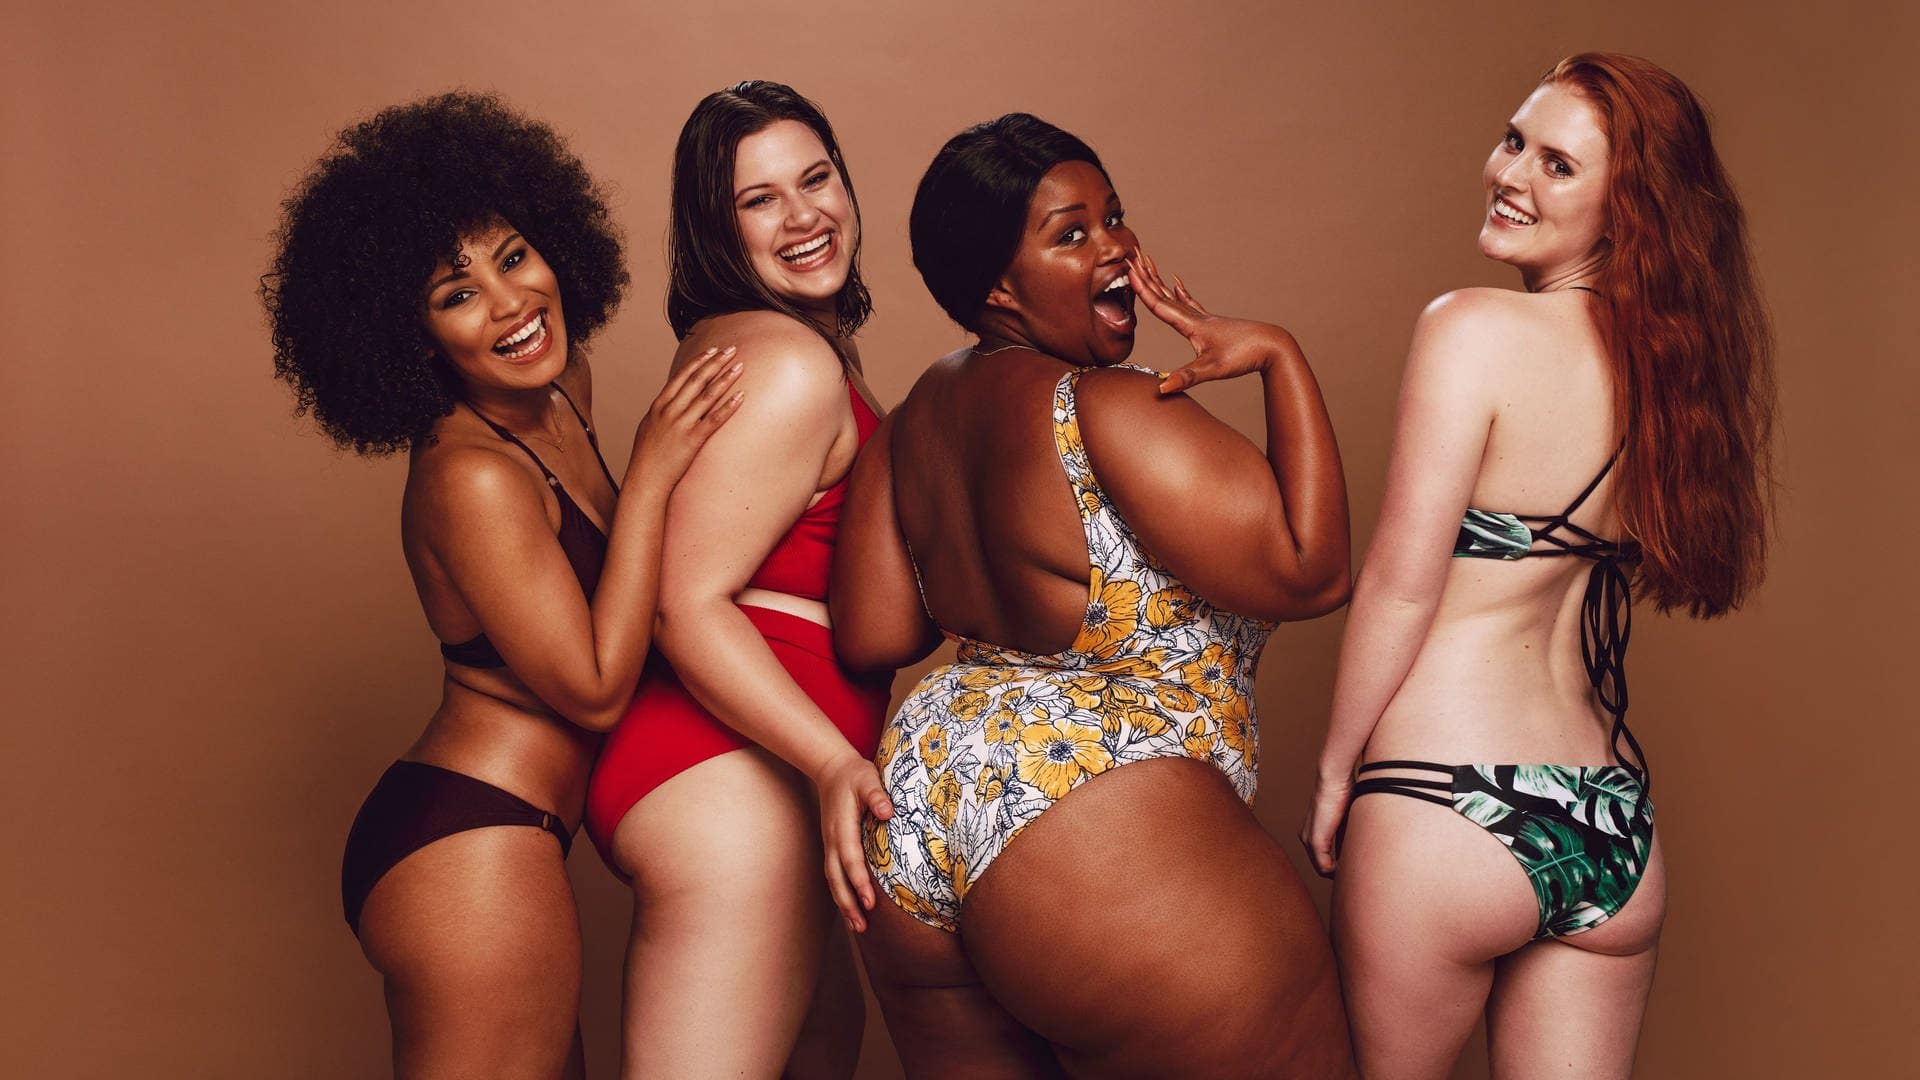 Vier Frauen mit unterschiedlichen Figuren und Hautfarben – lachend und selbstbewusst im Bikini, sie stehen für bodypositivity und brauchen keinen BMI-Rechner. (Foto: Adobe Stock, Jacob Lund)